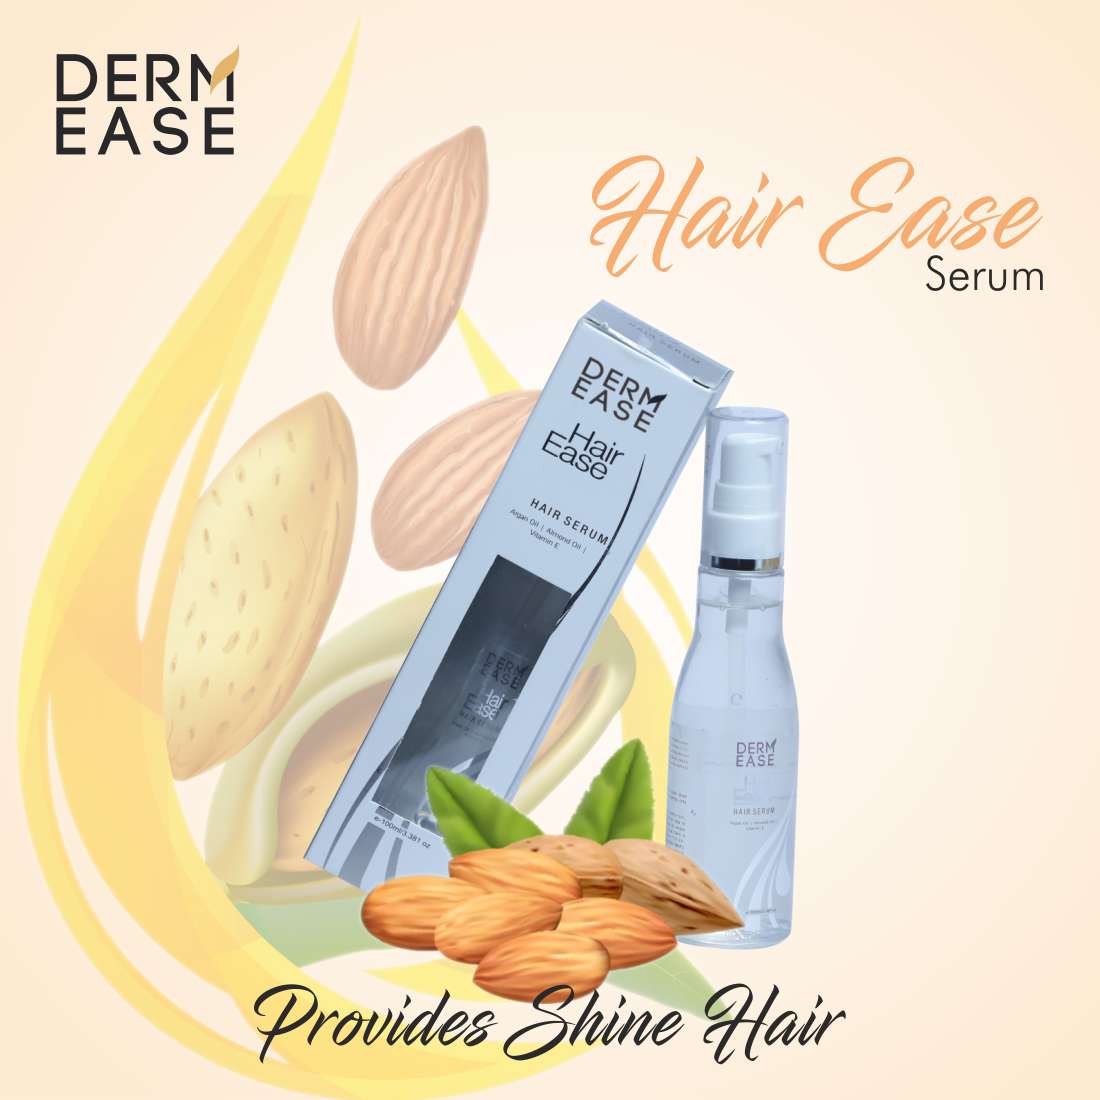 DERM EASE Hair Ease Hair Serum